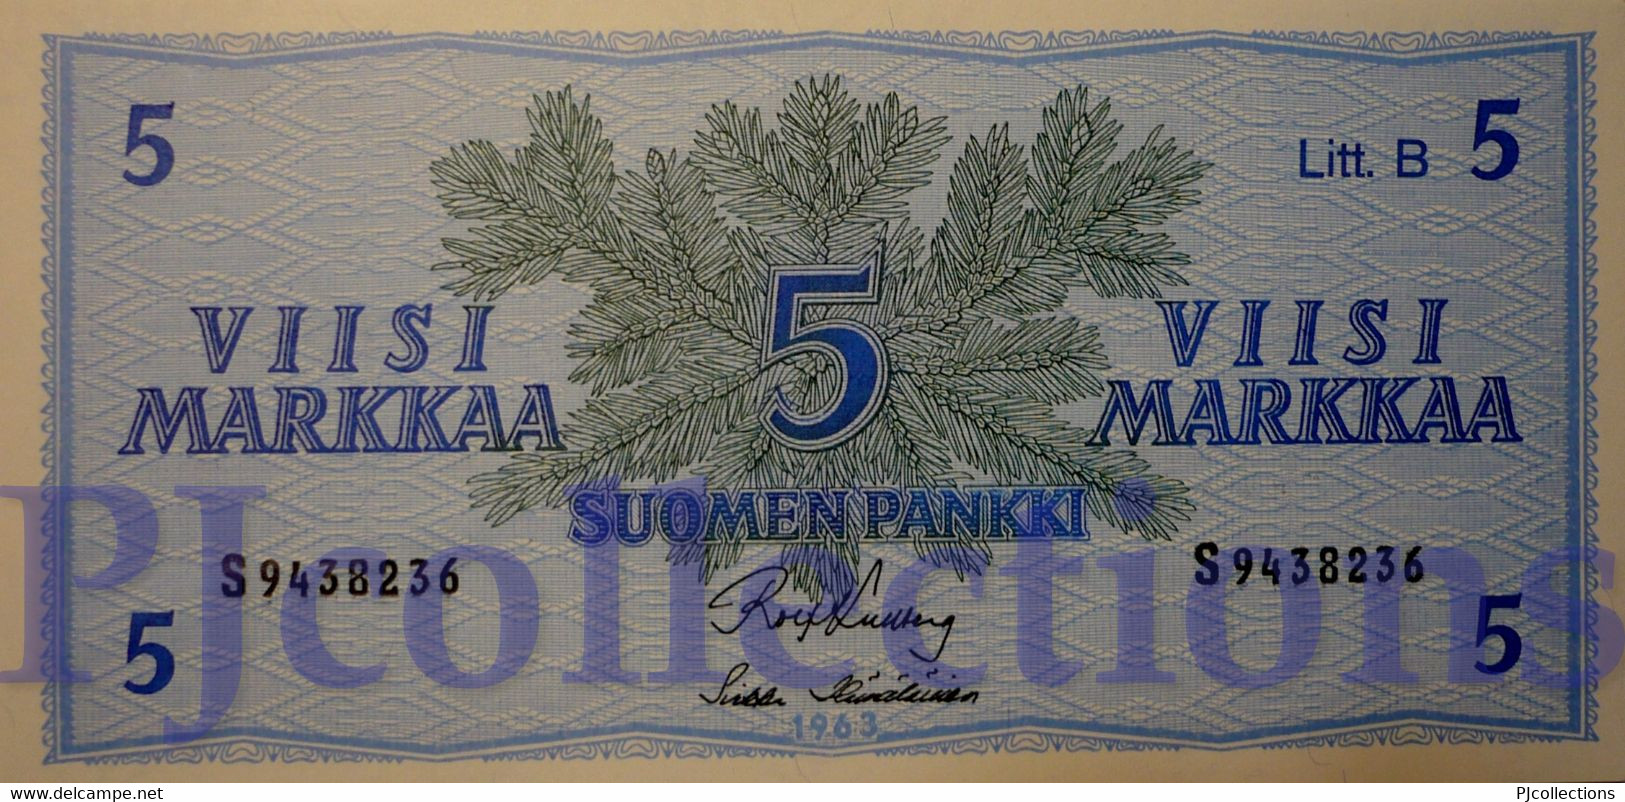 FINLAND 5 MARKKAA 1963 PICK 106A UNC - Finnland